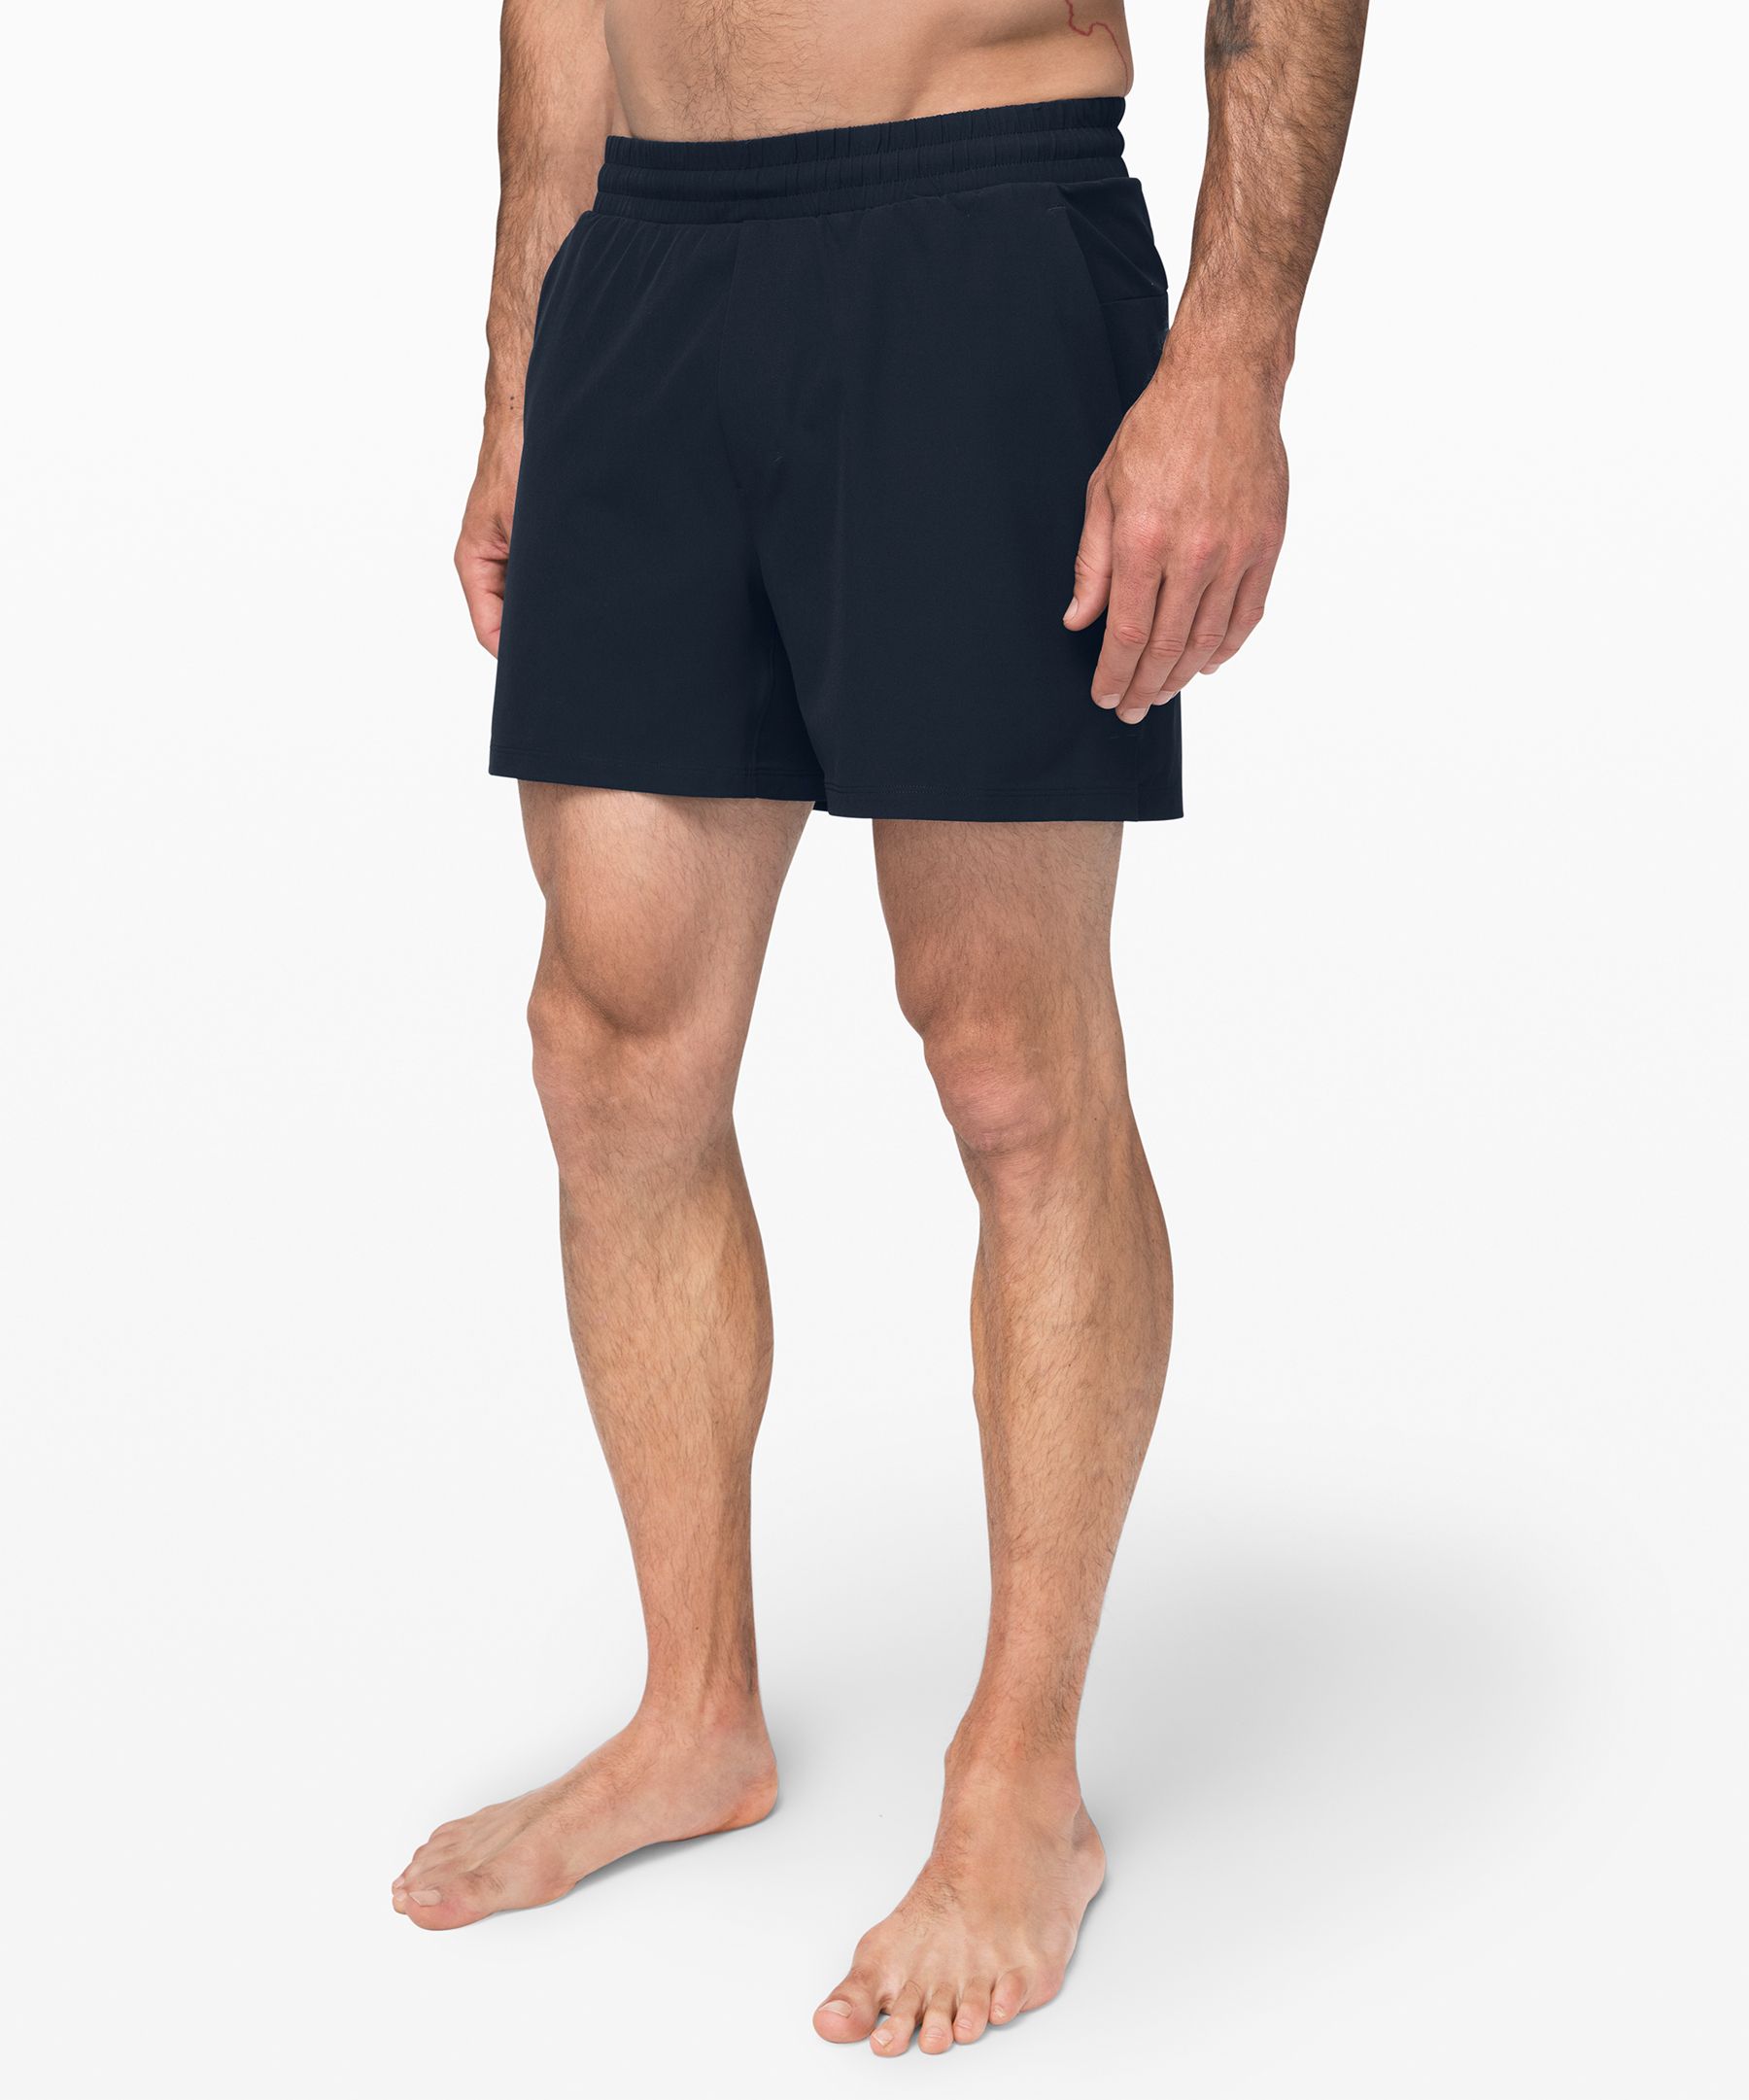 lululemon 5 inch shorts